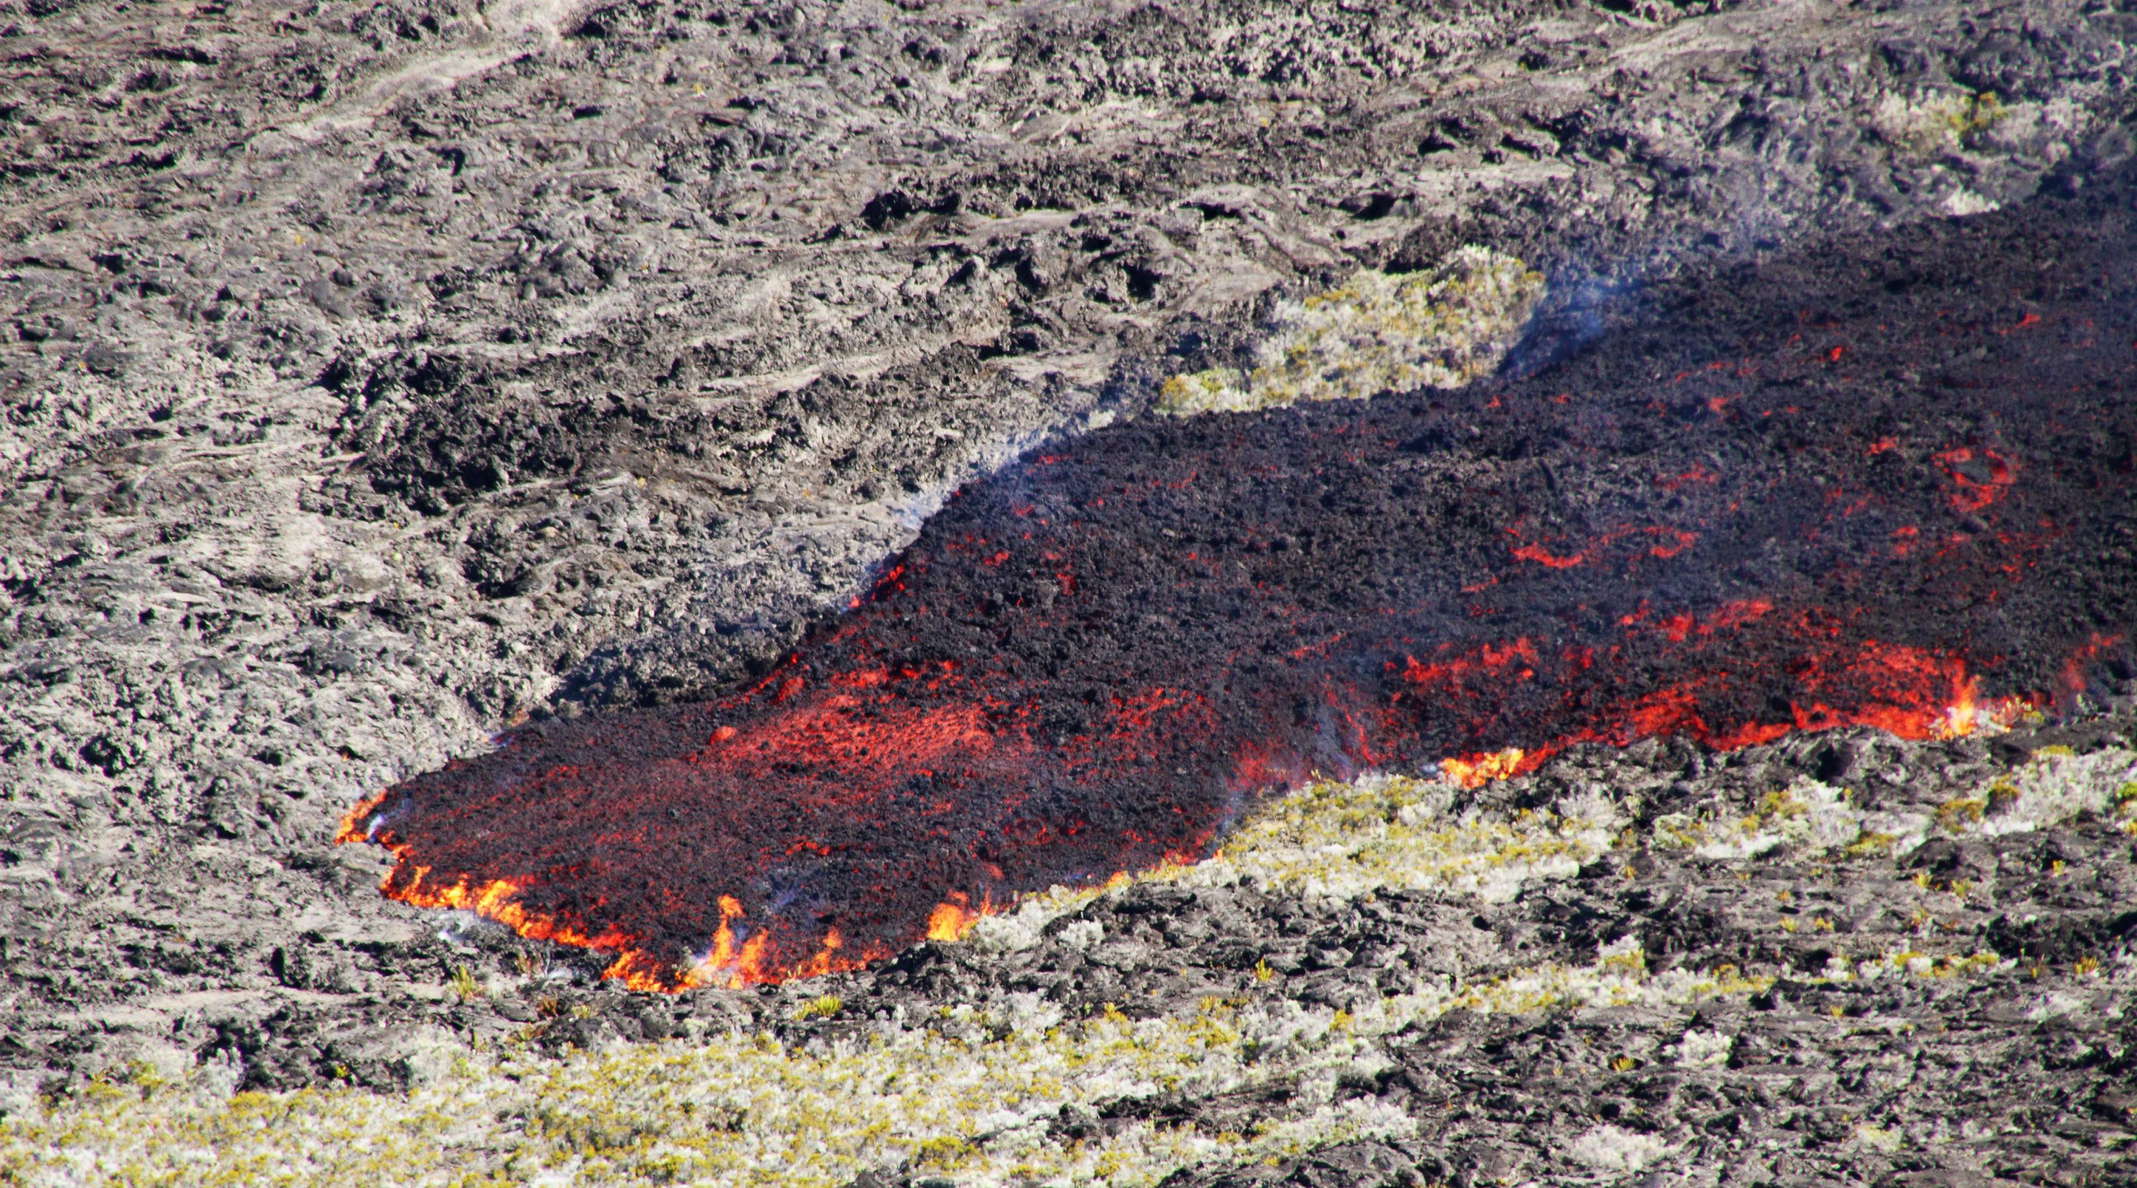 Piton de la Fournaise  |  Flowing lava in Enclos Fouqué